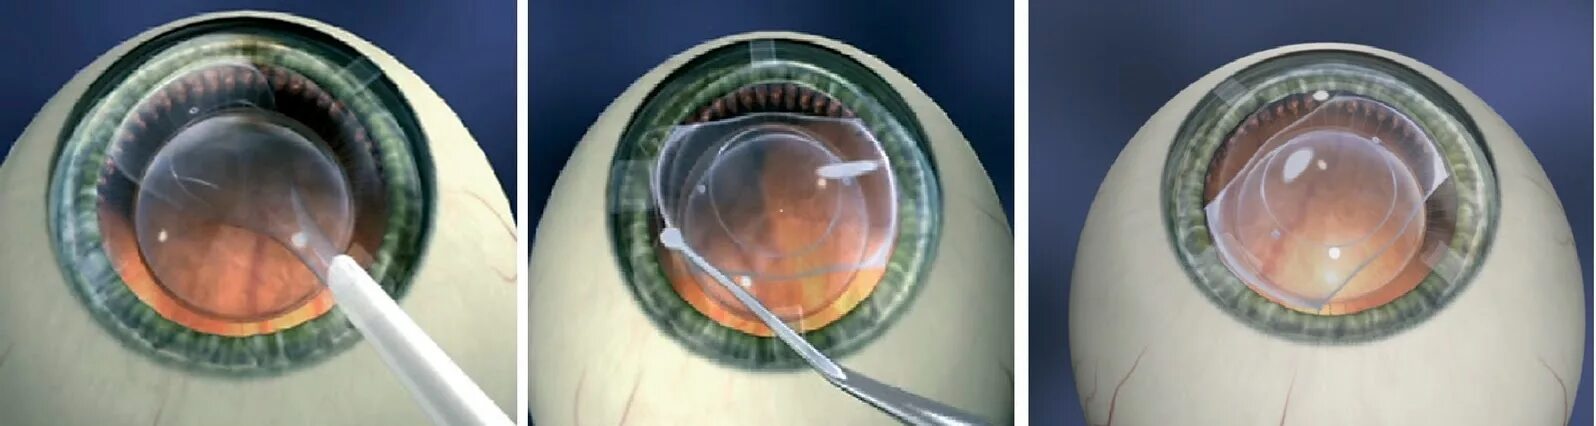 Линзы в глаза операция. Имплантация факичных интраокулярных линз. Факичные интраокулярные линзы (ИОЛ)..